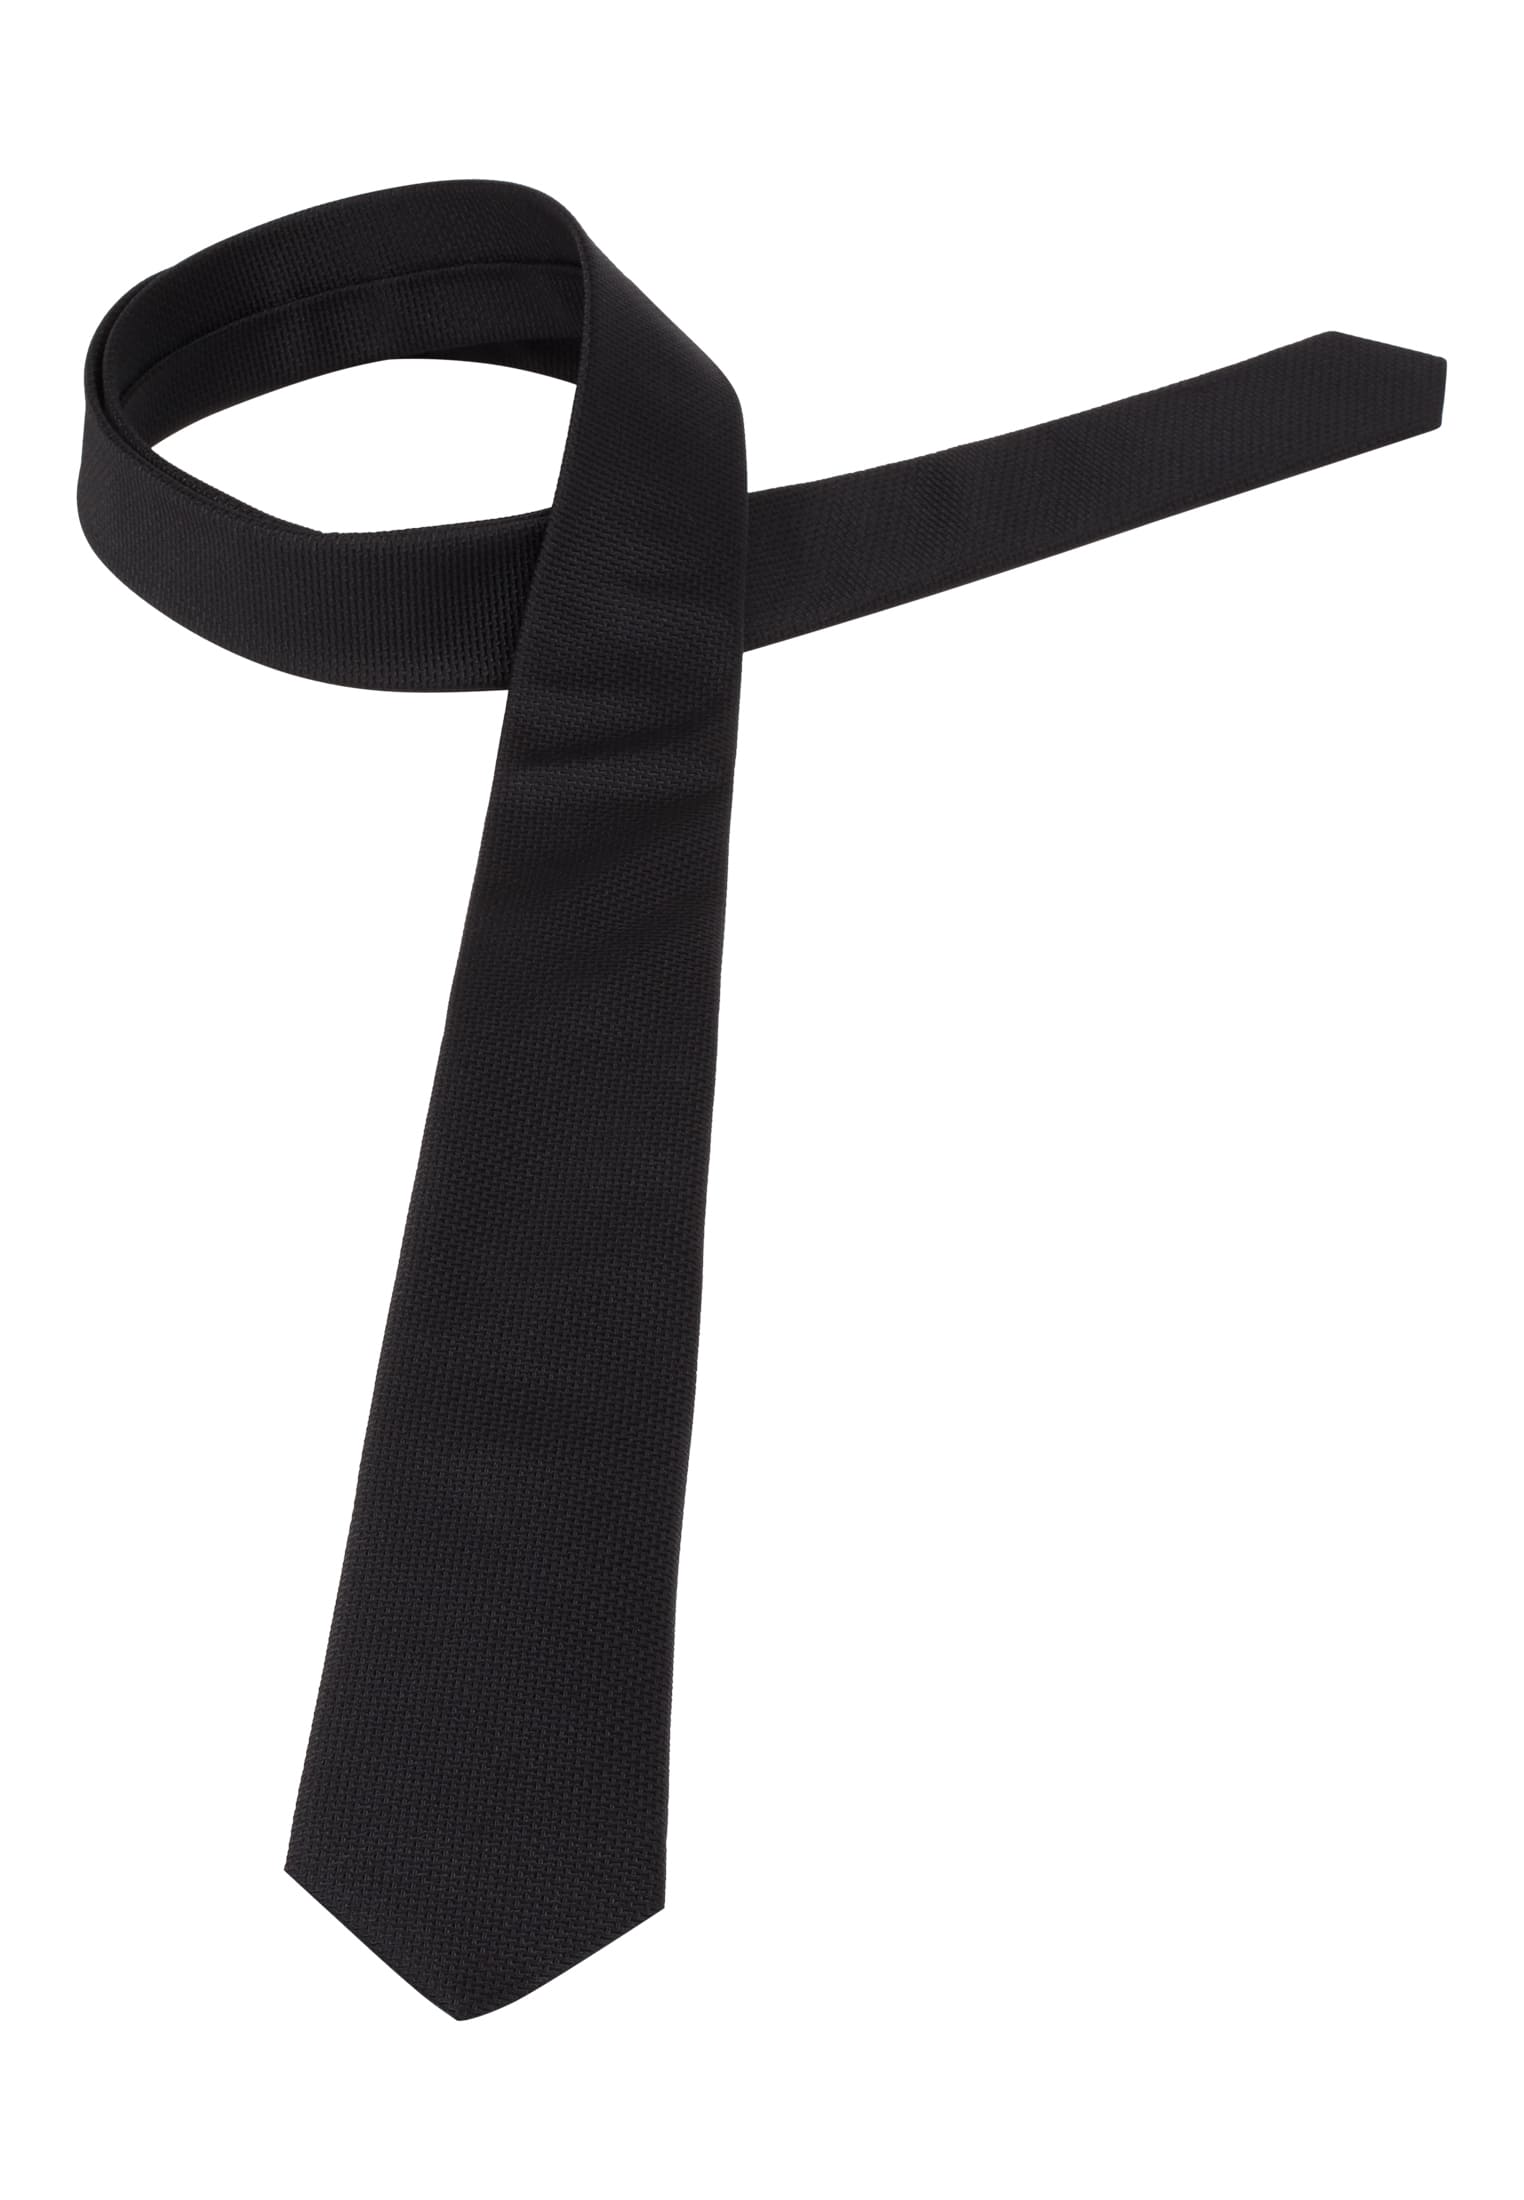 Krawatte in schwarz strukturiert | schwarz | 142 | 1AC01872-03-91-142